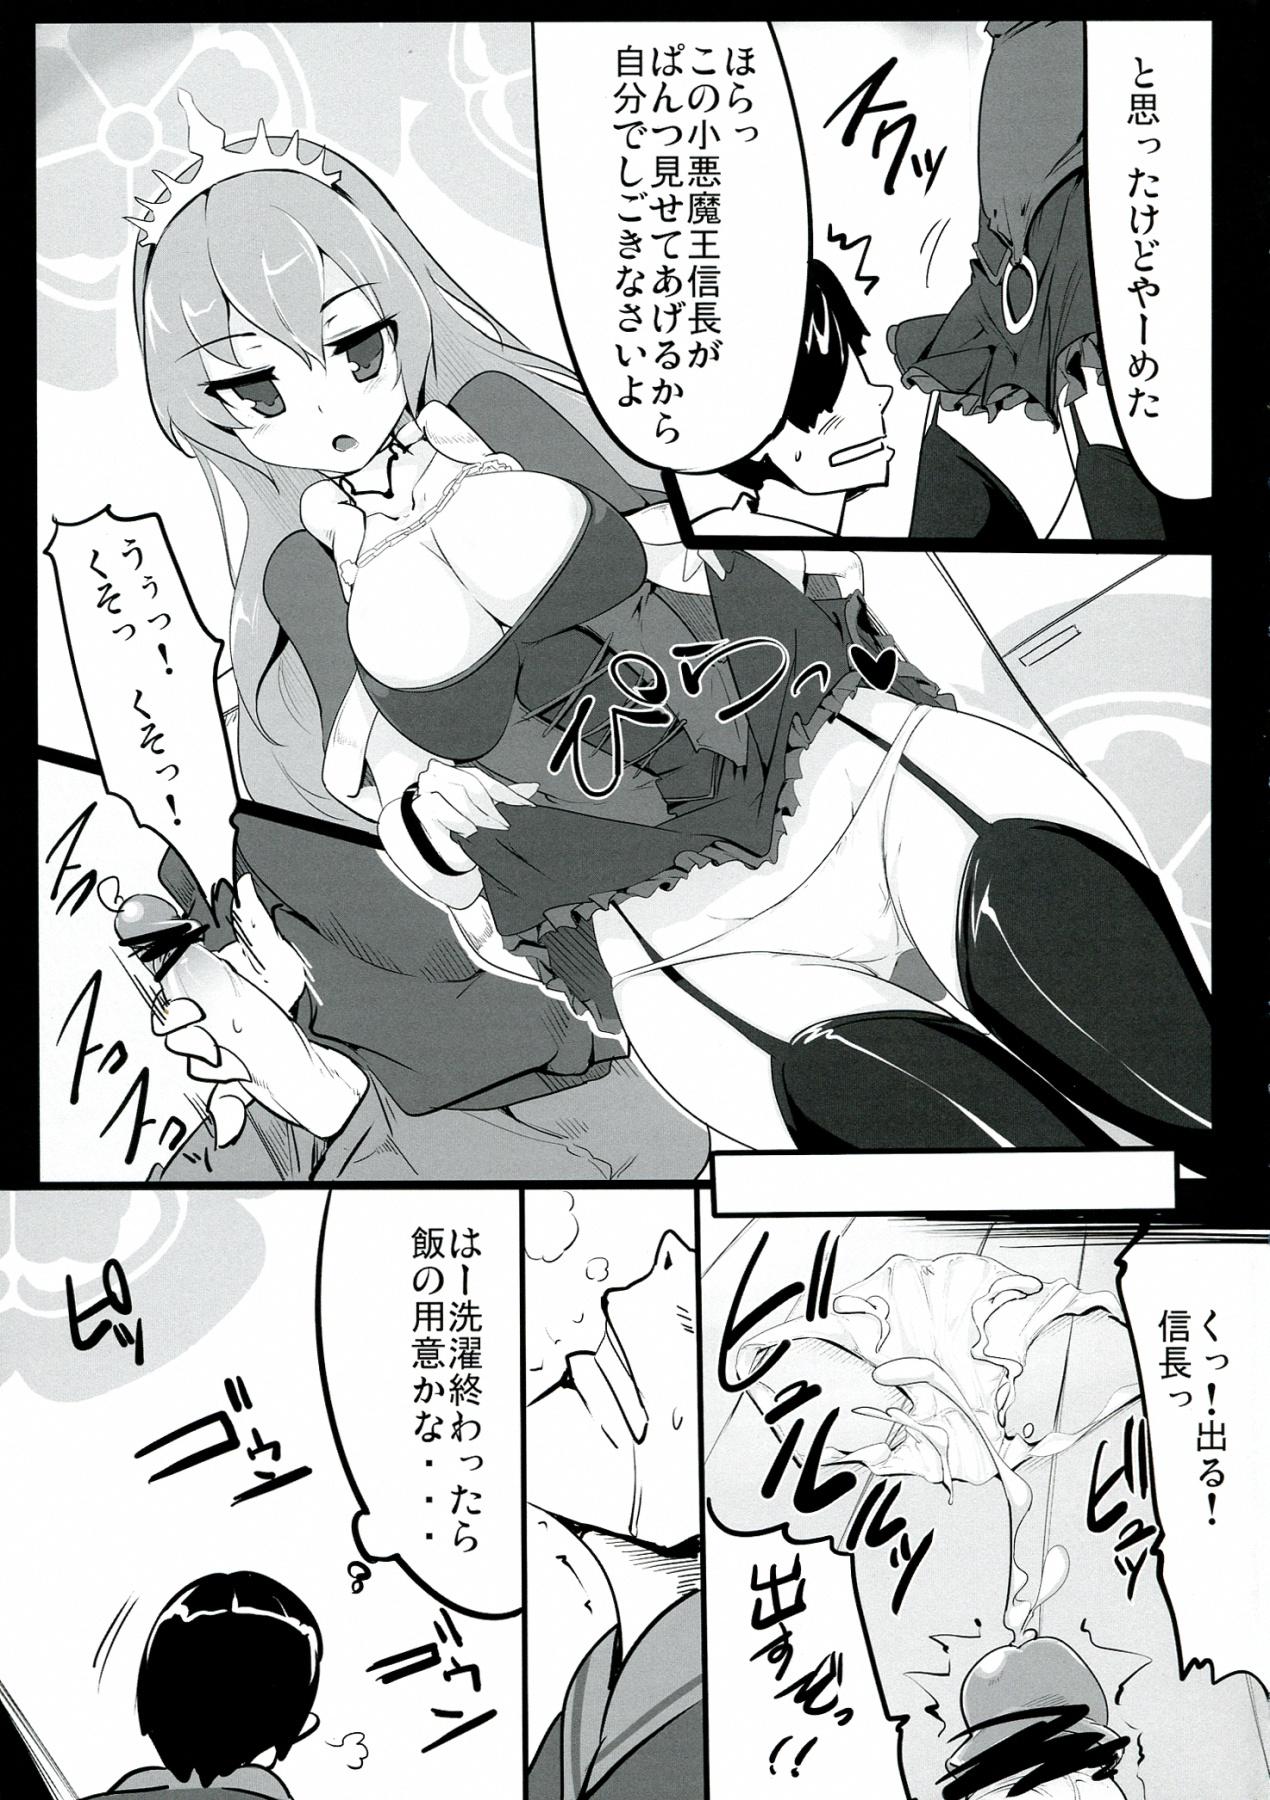 Masturbandose Zehi ni Oyobazu. - Sengoku collection Girlfriends - Page 9